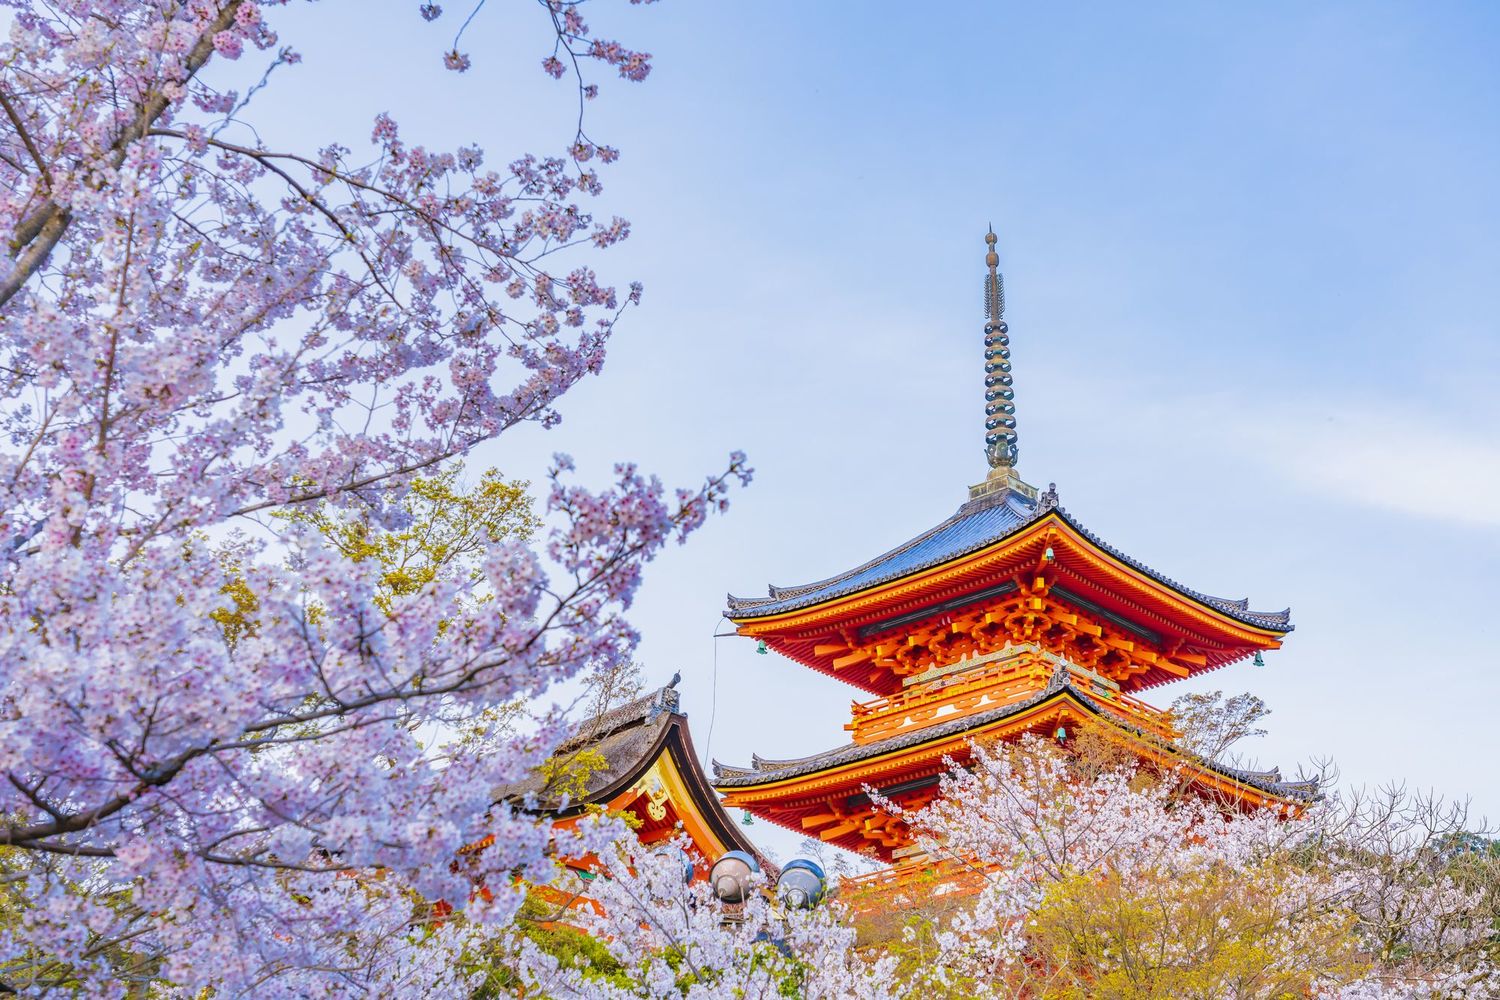 観光都市・京都を襲った未曾有の危機と歴史的転換点　これからの「京都らしさ」（第1回）